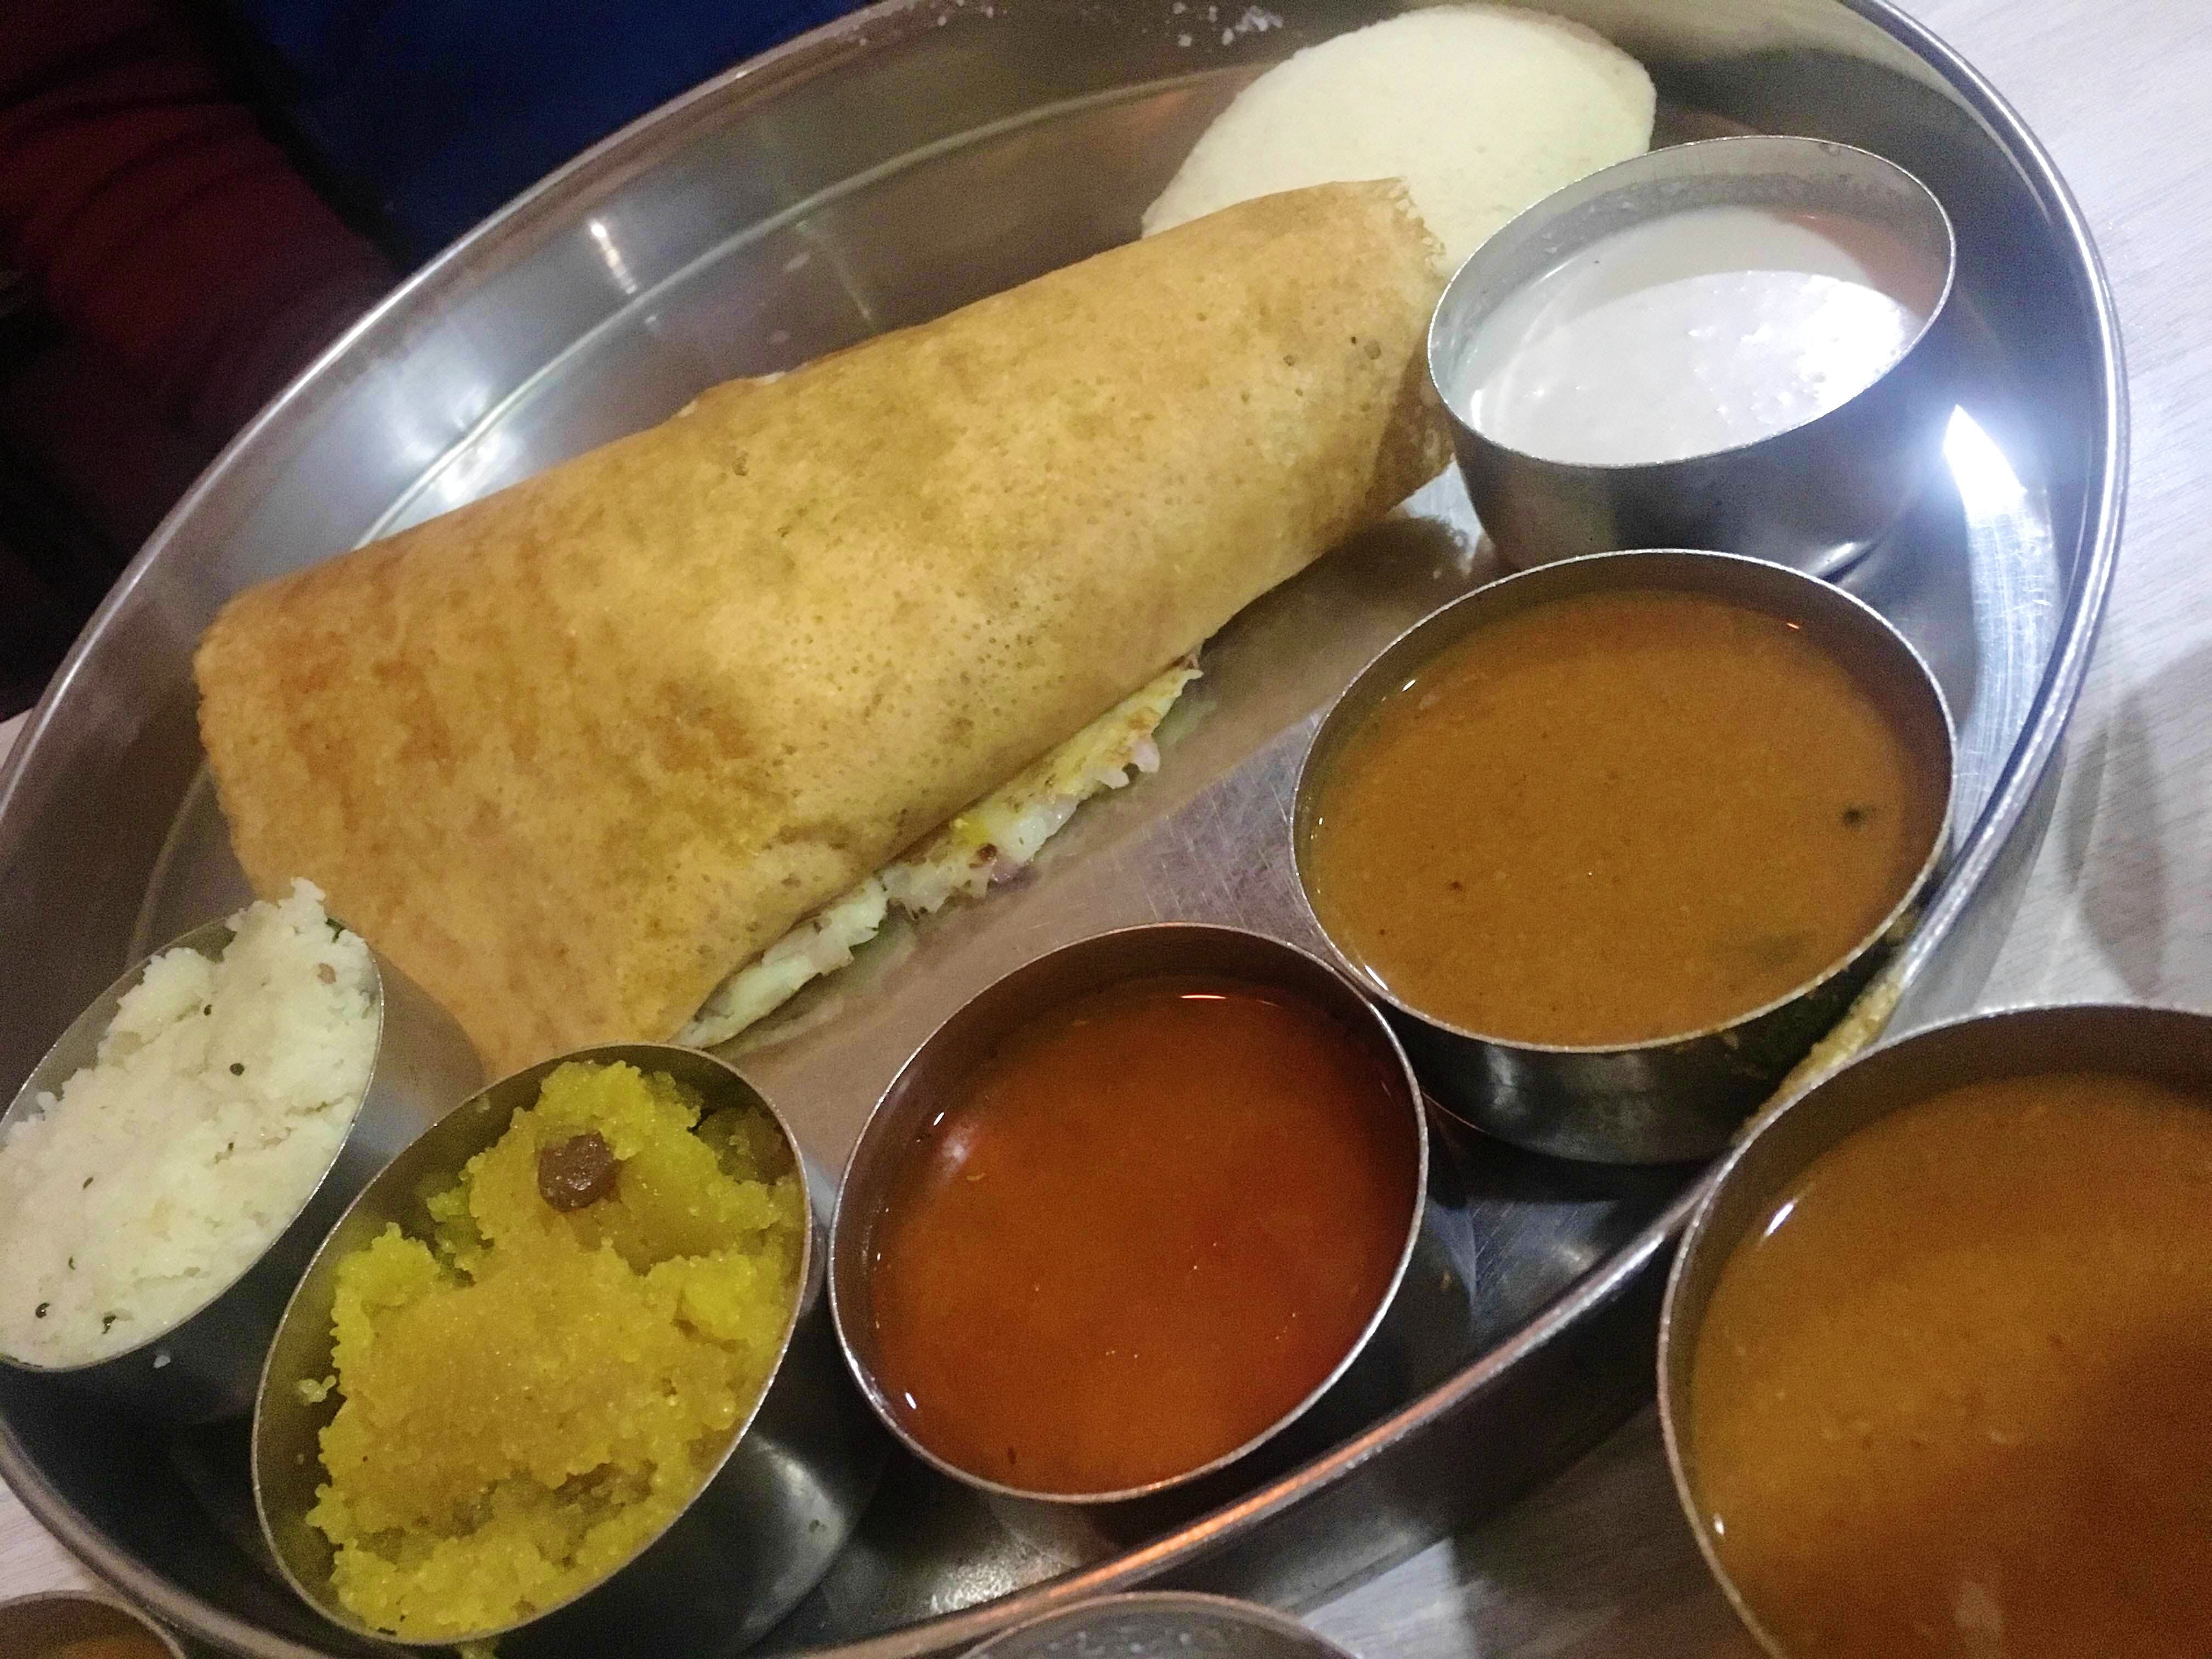 Dish,Food,Cuisine,Dosa,Taquito,Ingredient,Indian cuisine,South Indian cuisine,Meal,Produce